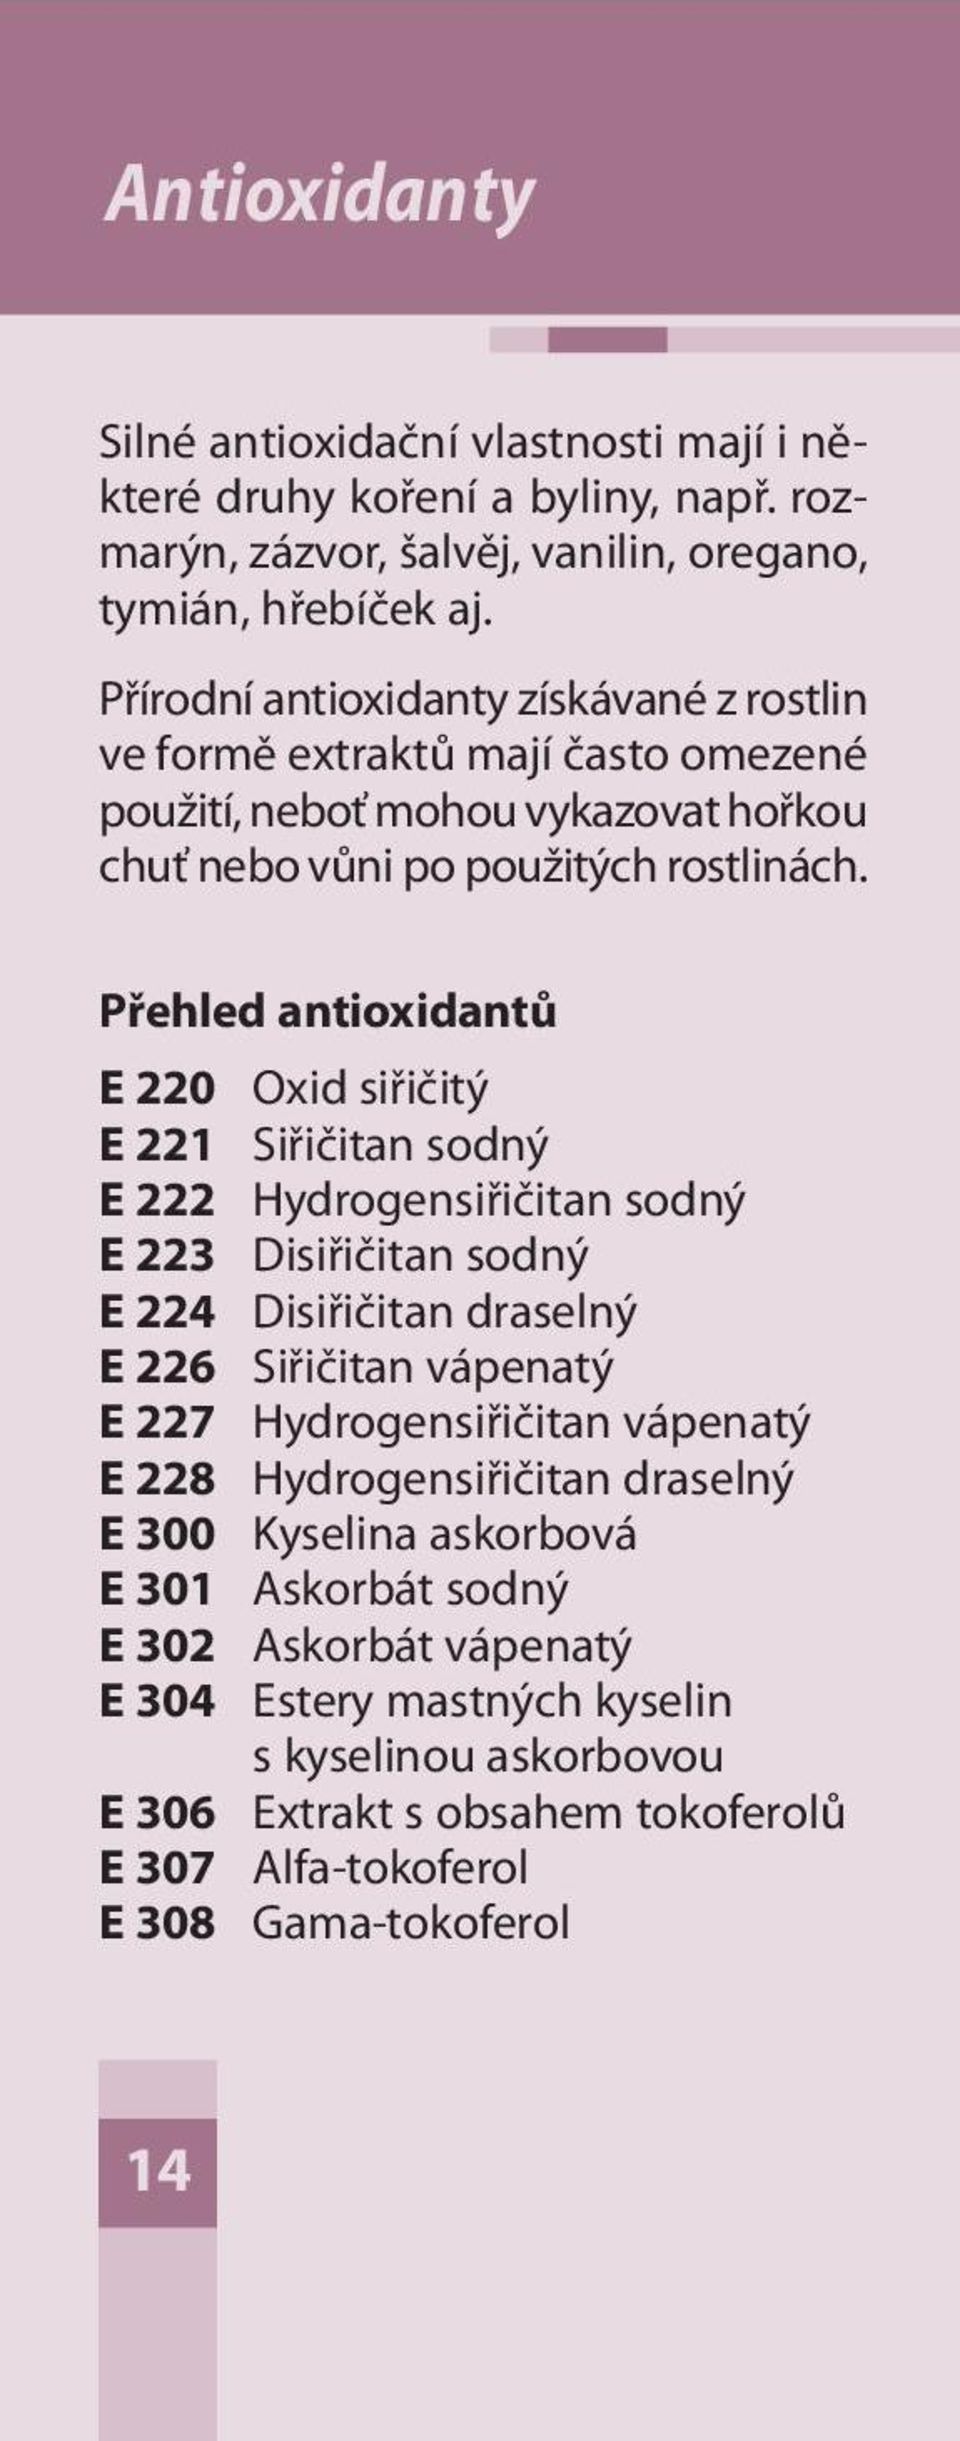 Přehled antioxidantů E 220 Oxid siřičitý E 221 Siřičitan sodný E 222 Hydrogensiřičitan sodný E 223 Disiřičitan sodný E 224 Disiřičitan draselný E 226 Siřičitan vápenatý E 227